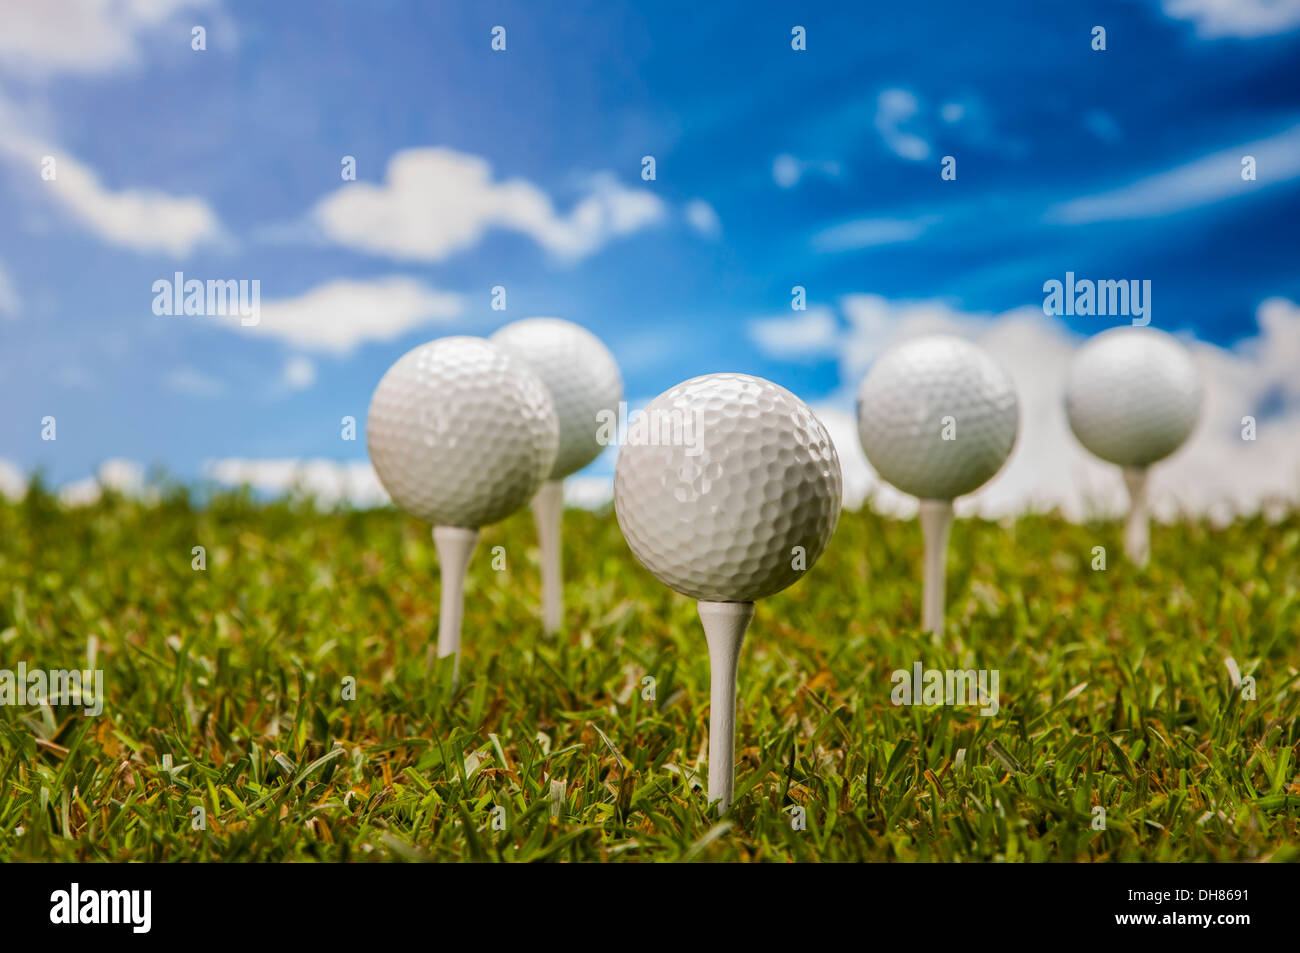 Golf stuff on Green grass Banque D'Images